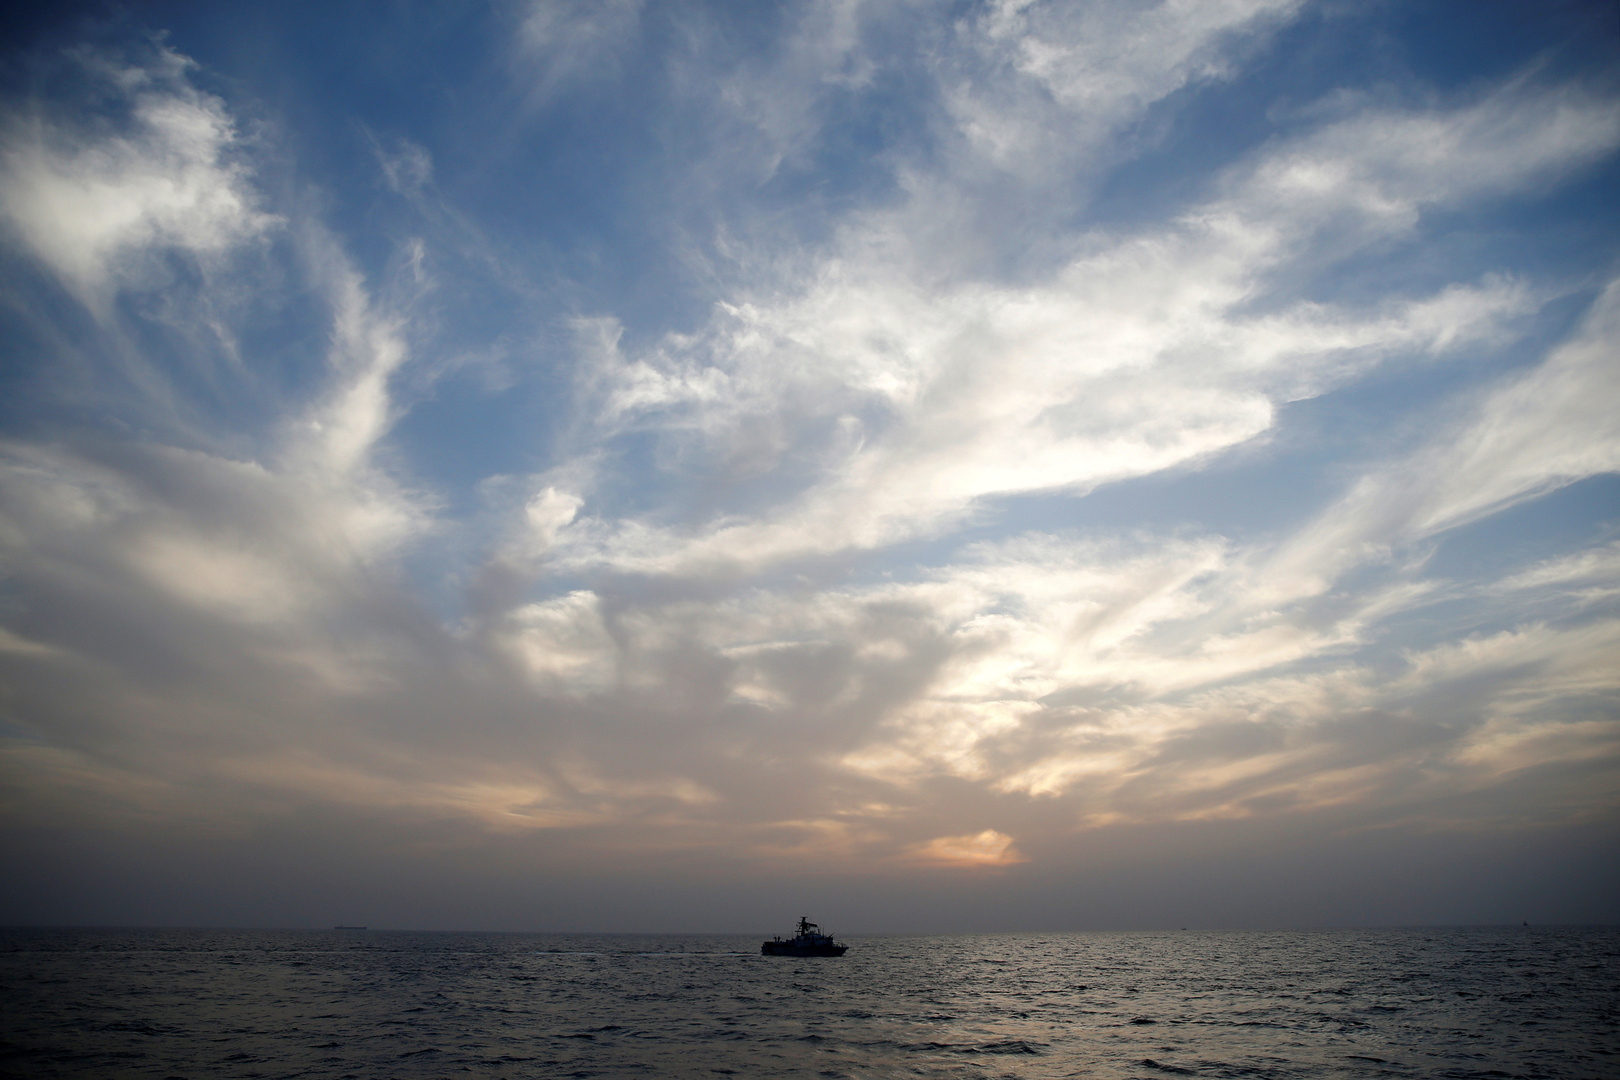 اعتقال إيراني اختبأ ثلاثة أيام على متن سفينة إسرائيلية